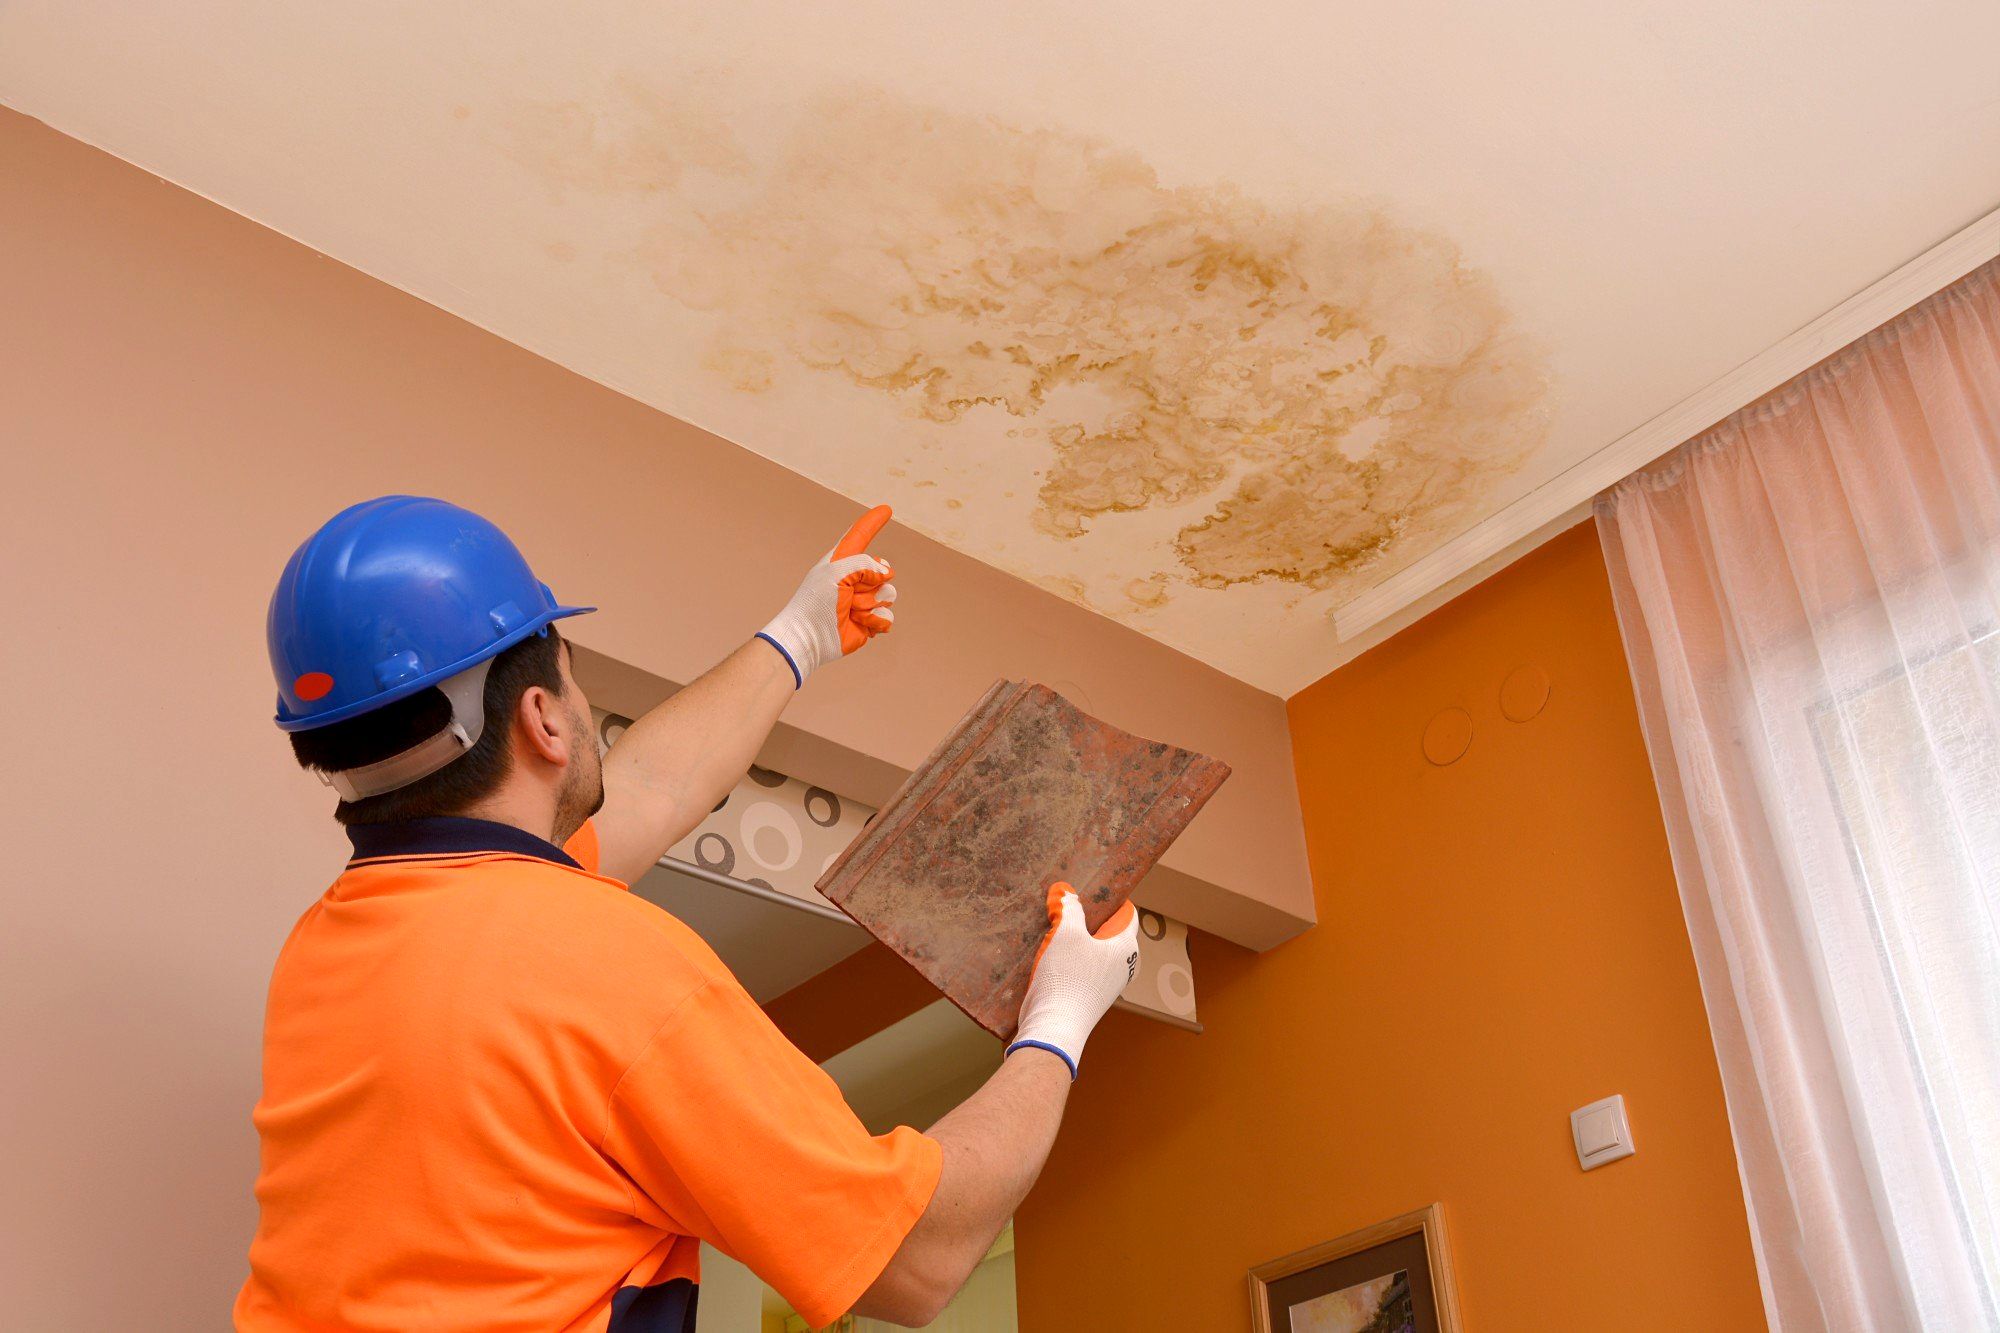 بهترین راهکارهای جلوگیری از نشتی آب از سقف ساختمان